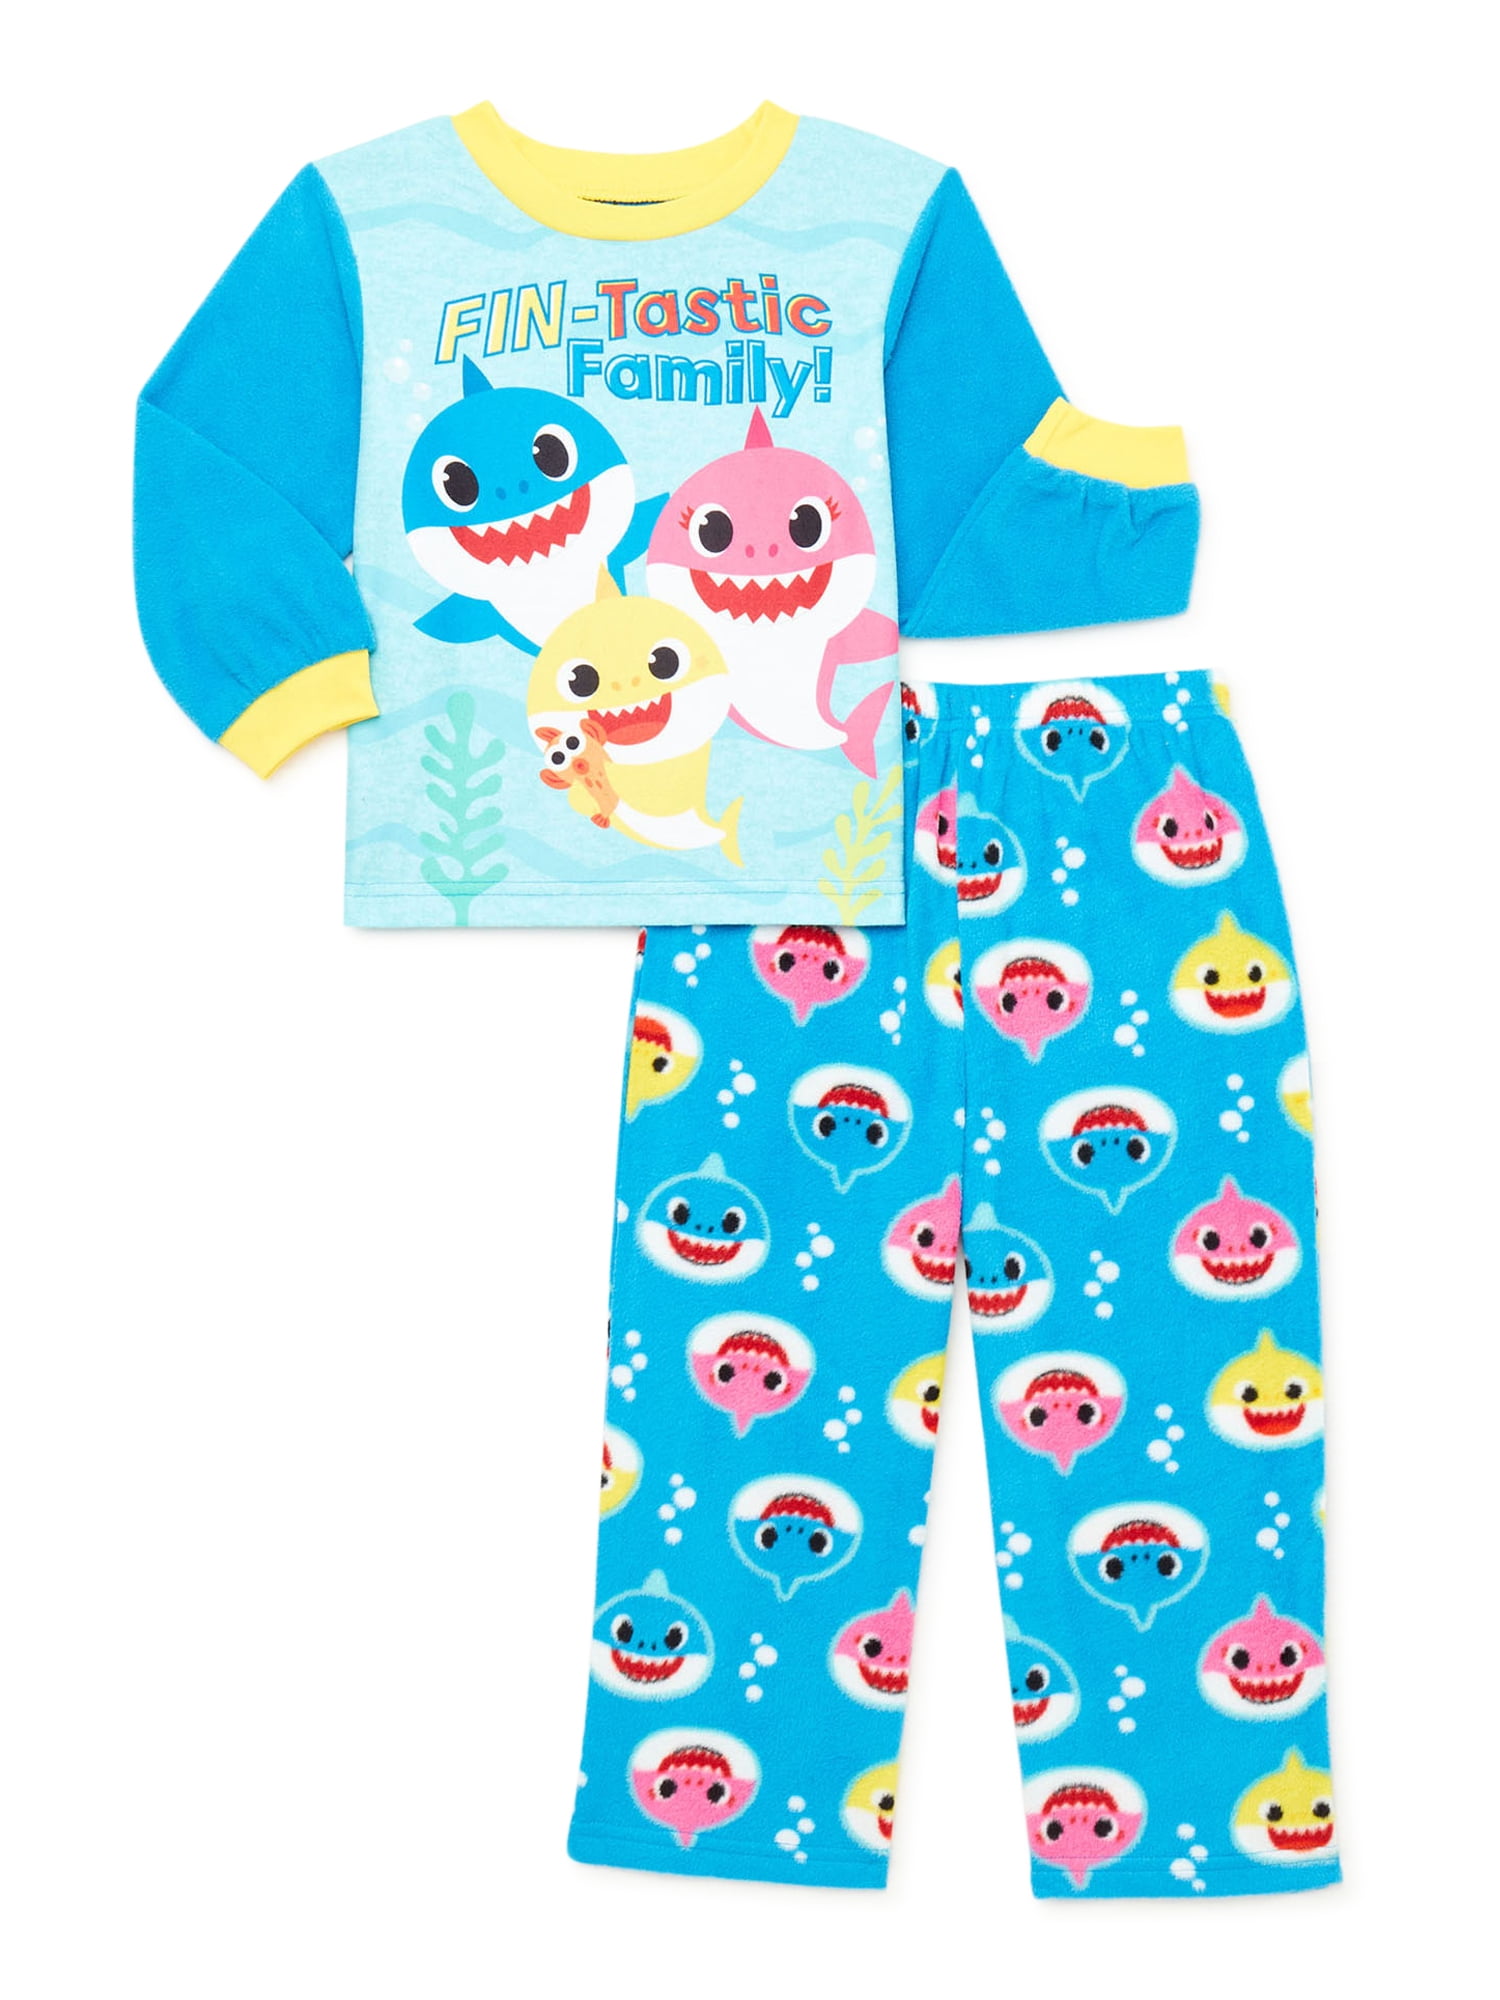 Baby Shark Boys 2-Piece Pajama Set